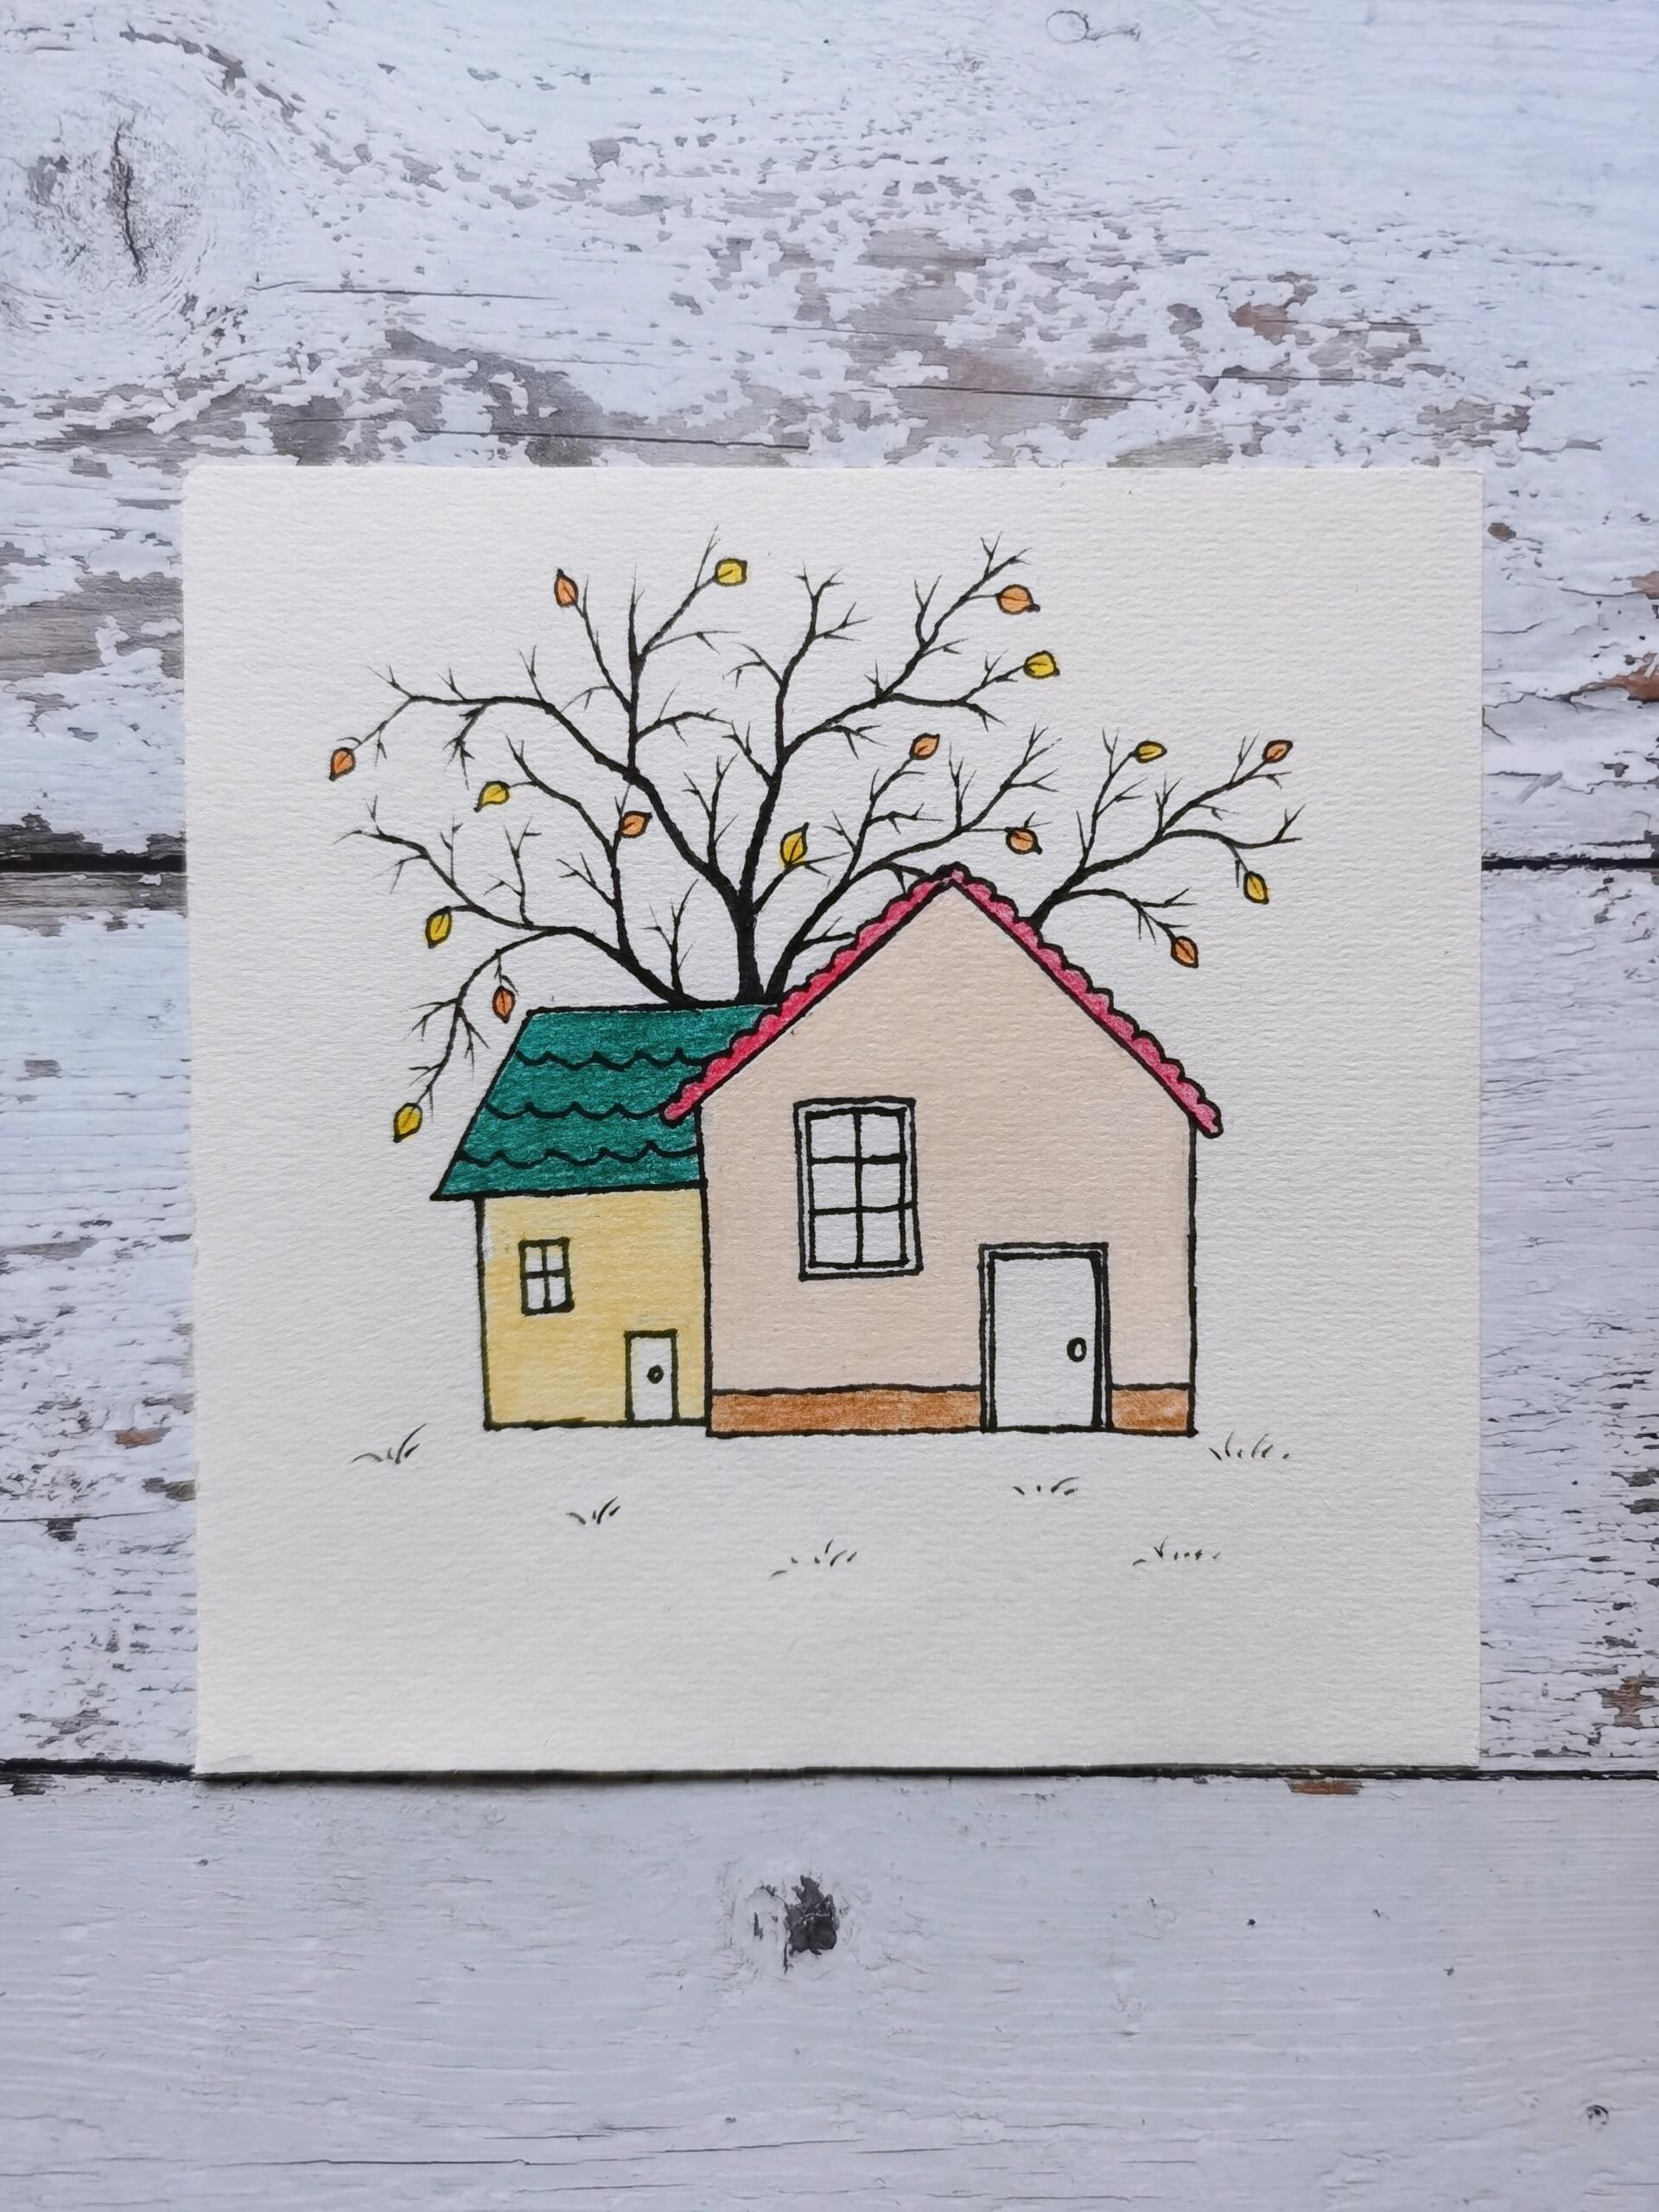 彩铅简笔画风景 画两个高低不同的小房子,涂上不同的颜色,后面画一棵